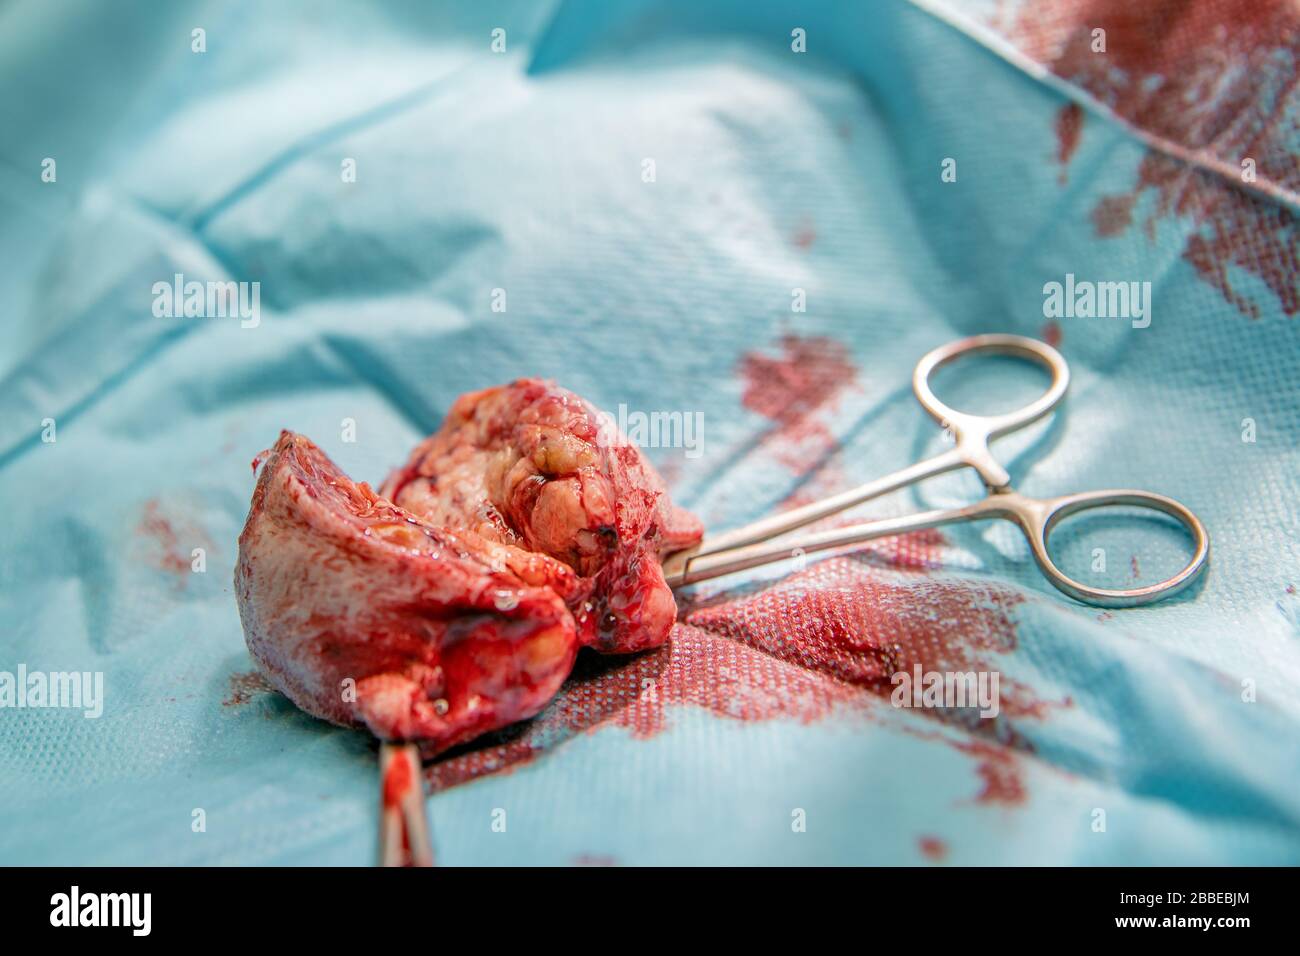 rimozione del tumore benigno sulla zampa del cane mediante intervento chirurgico Foto Stock